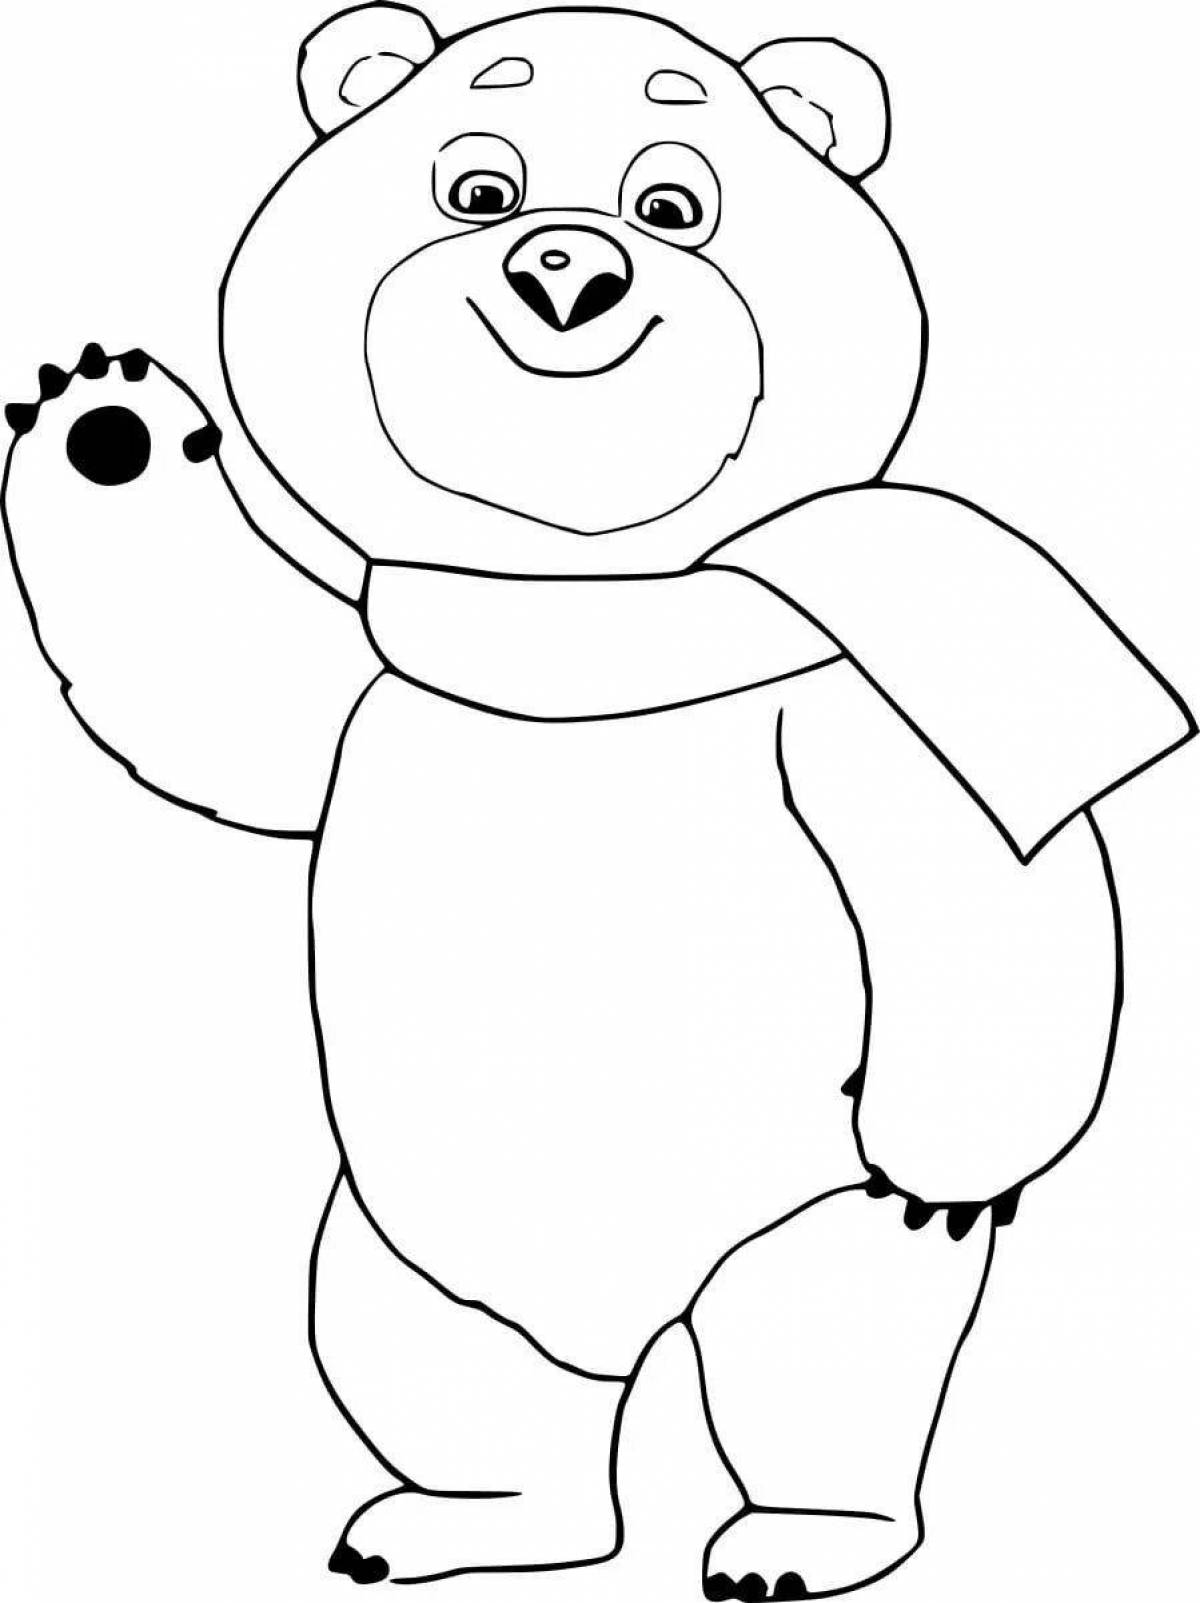 Russian symbol bear #8